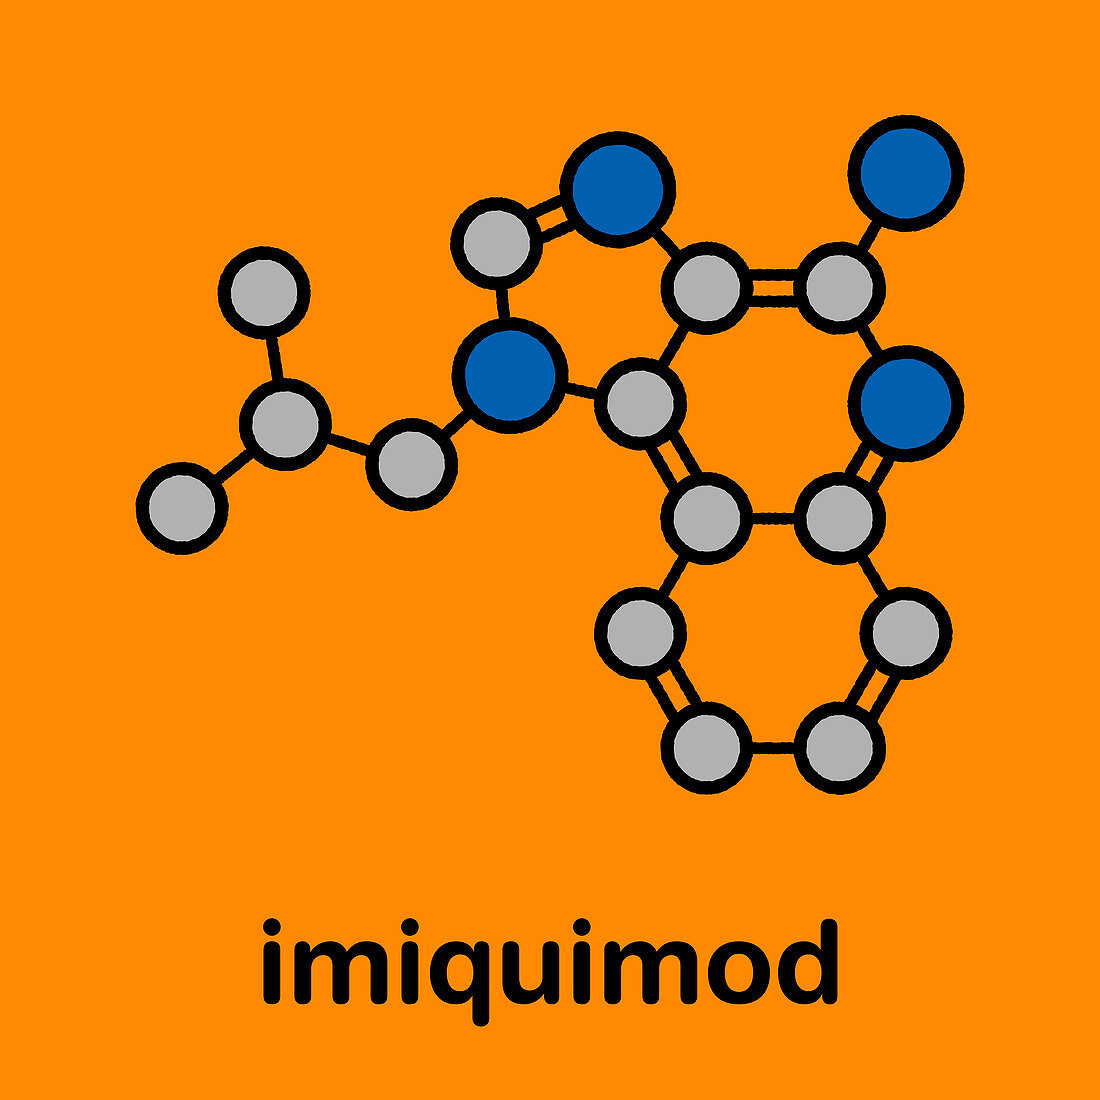 Imiquimod topical skin cancer drug, molecular model